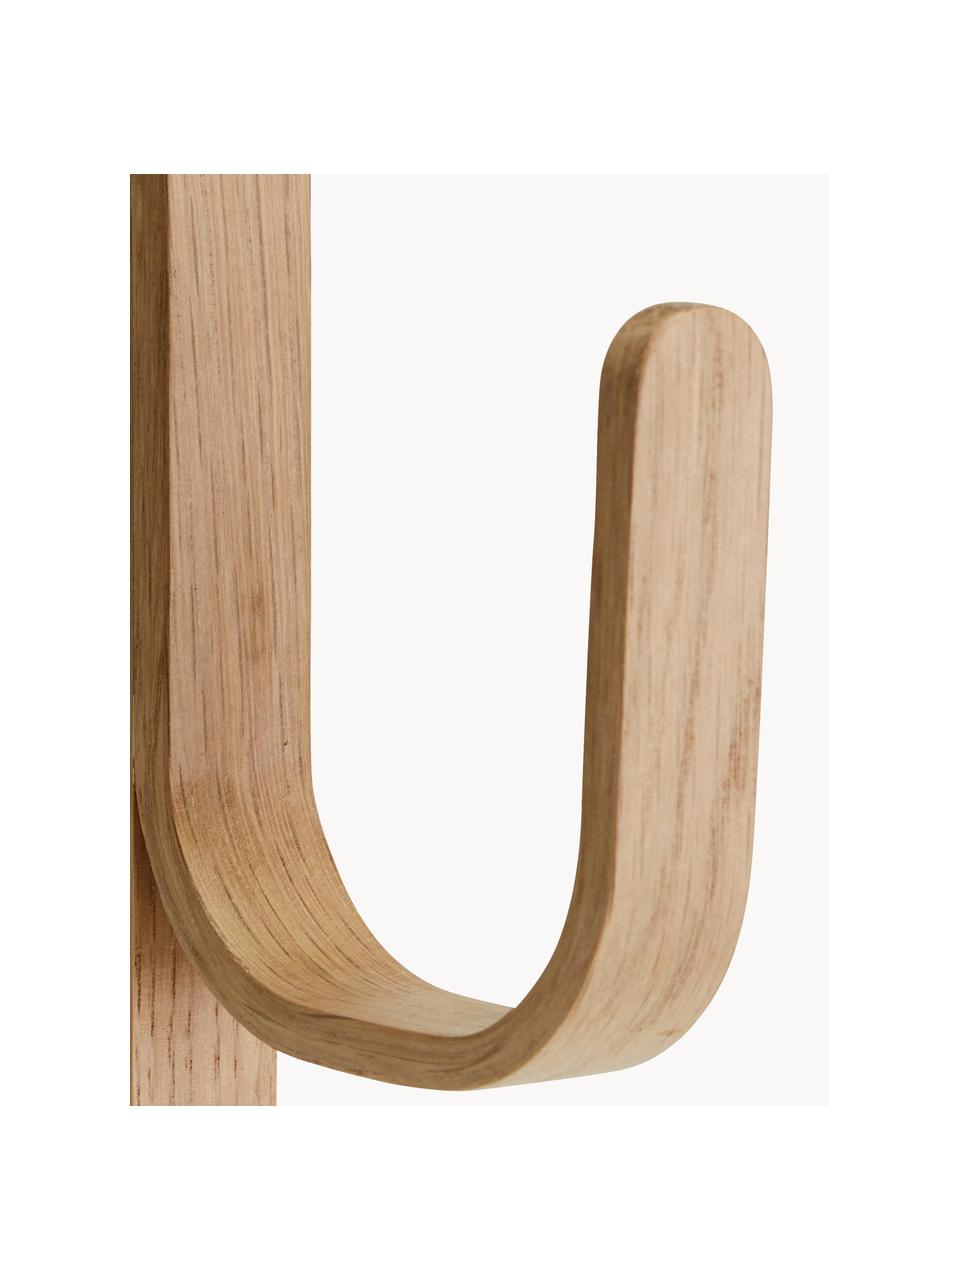 Háček z dubového dřeva Woody, Dubové dřevo

Tento produkt je vyroben z udržitelných zdrojů dřeva s certifikací FSC®., Dubové dřevo, Š 3 cm, V 23 cm